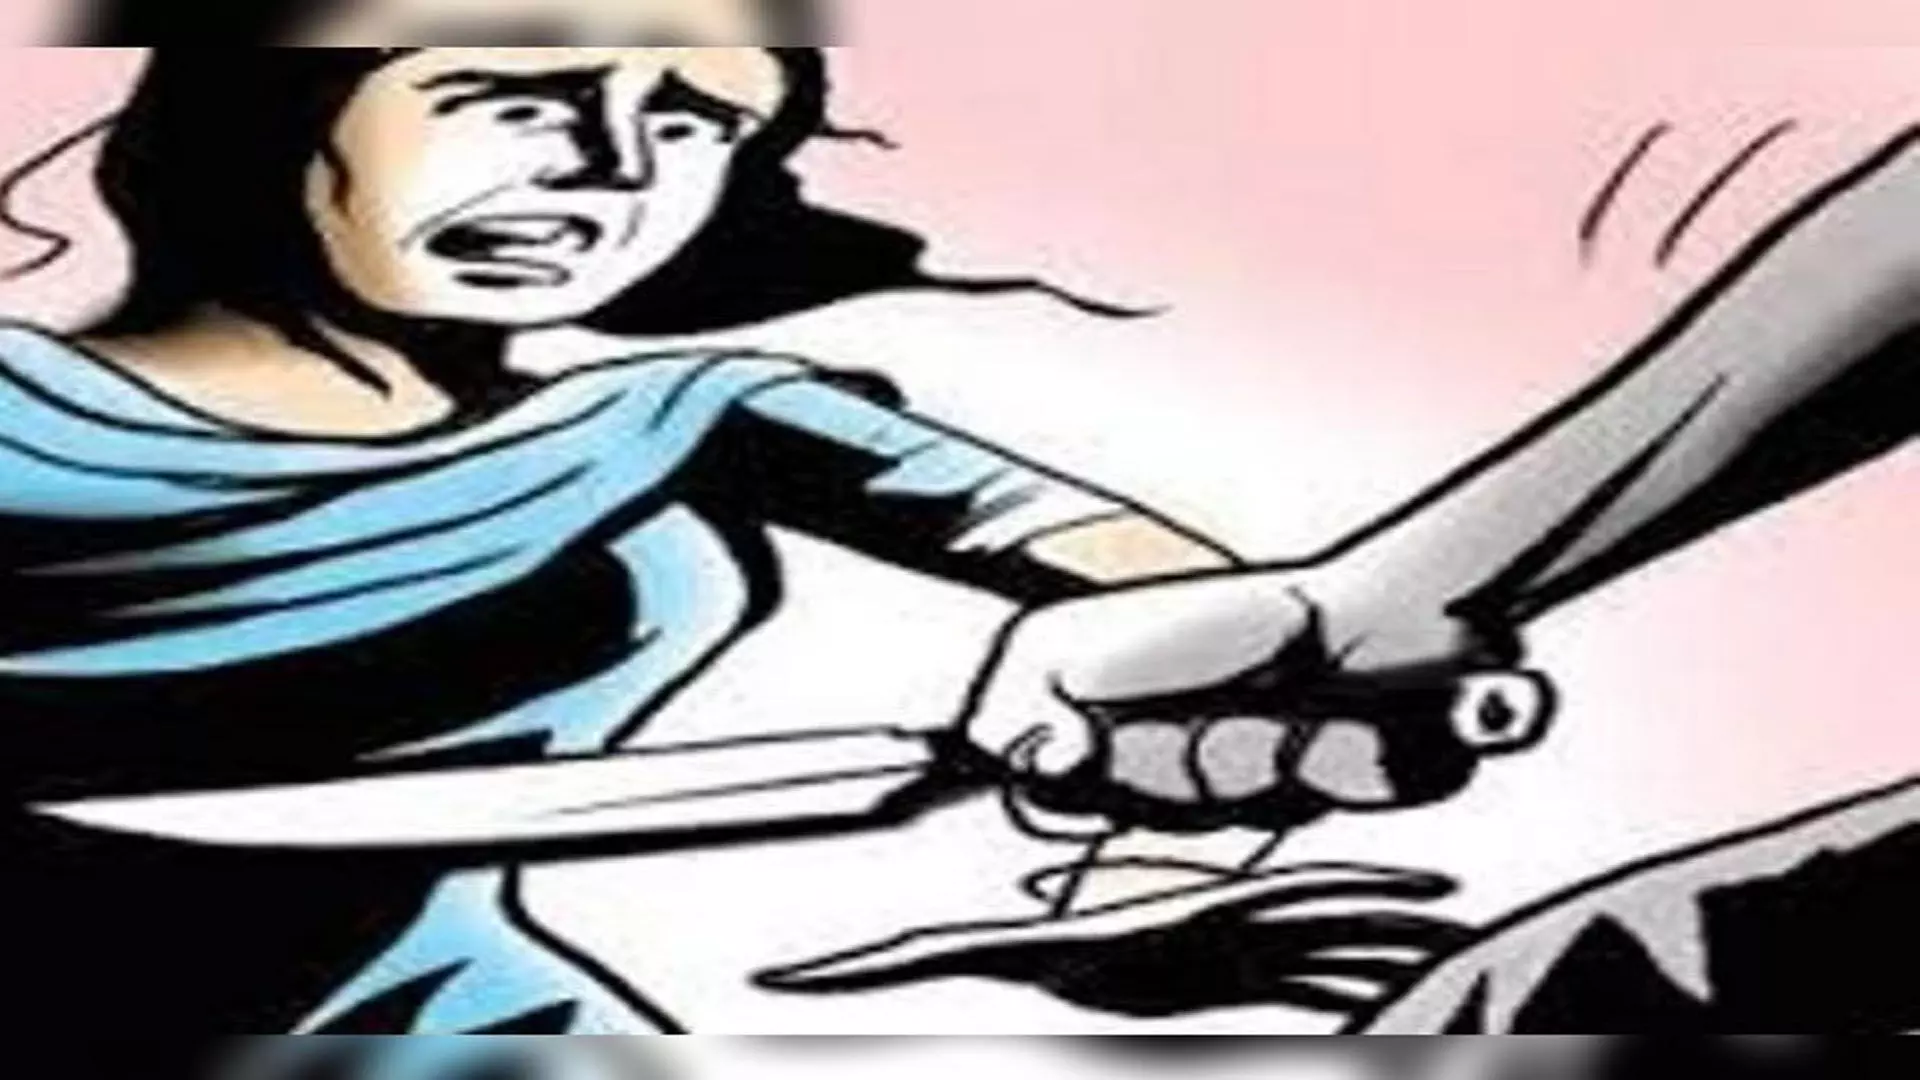 MUMBAI: शराब के नशे में धुत व्यक्ति ने पत्नी से झगड़े में 5 महीने की बेटी की हत्या कर दी